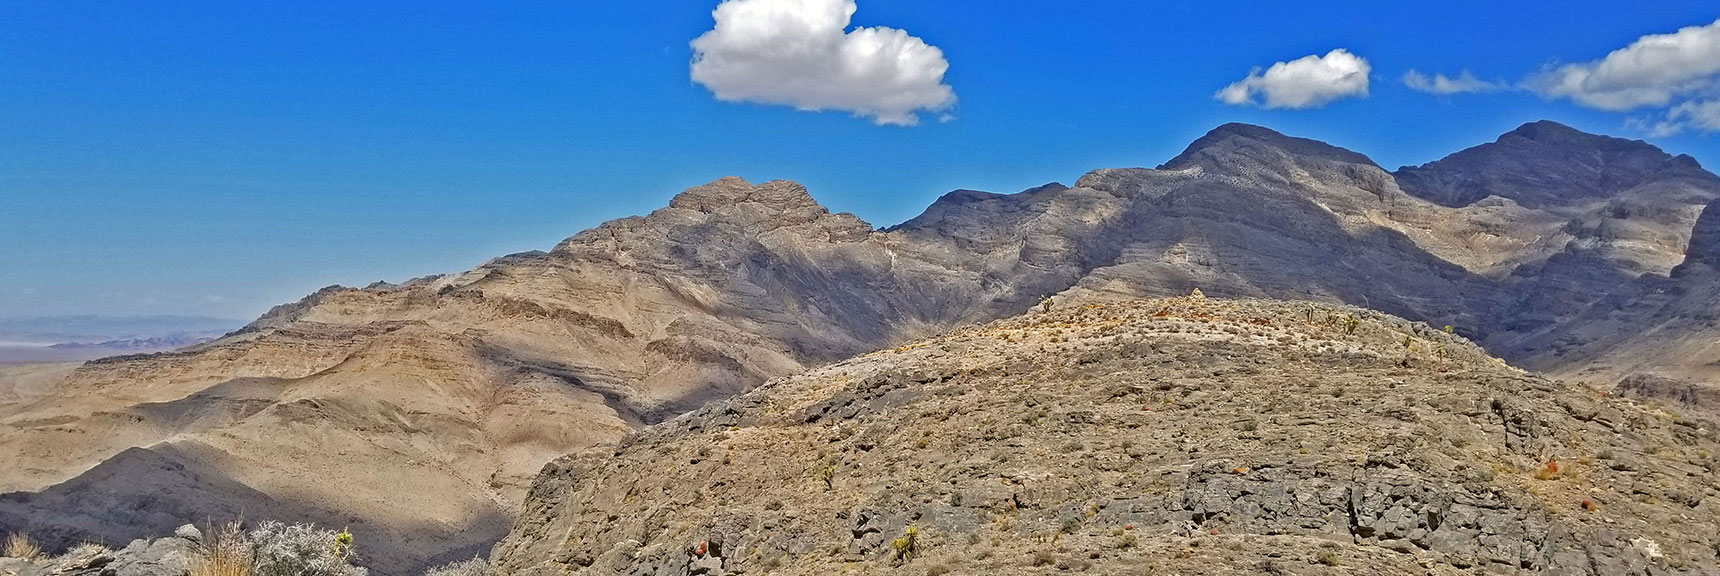 Southwestern Edge of Sheep Range from Fossil Ridge Summit | Fossil Ridge End to End | Sheep Range | Desert National Wildlife Refuge, Nevada